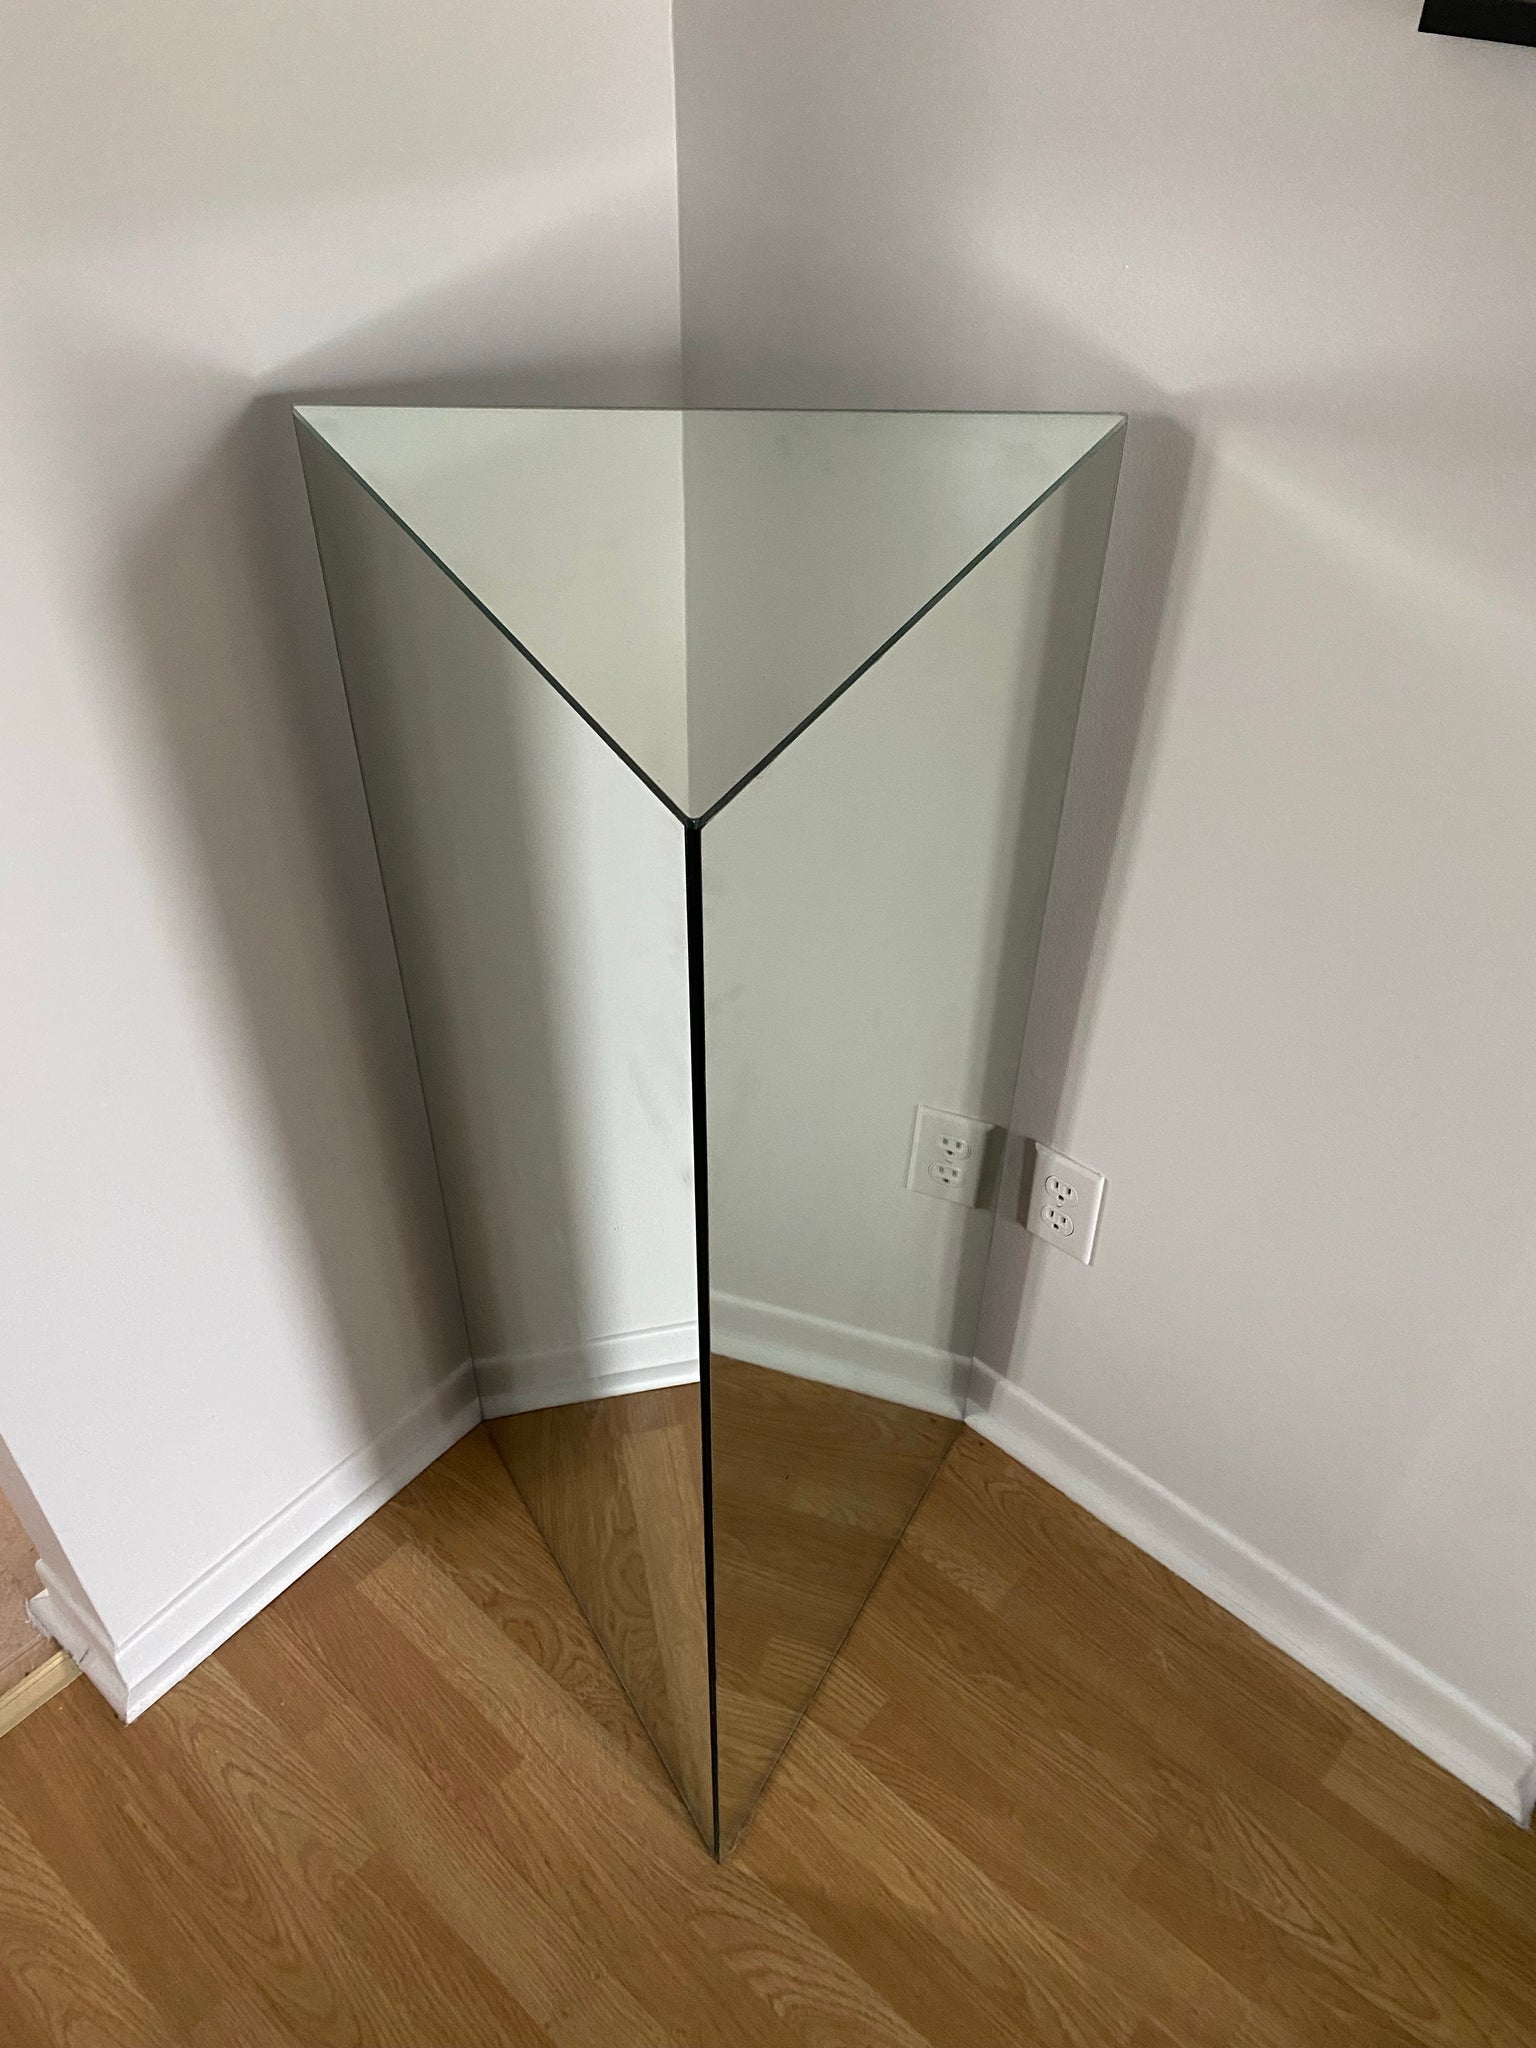 Triangular mirror podium